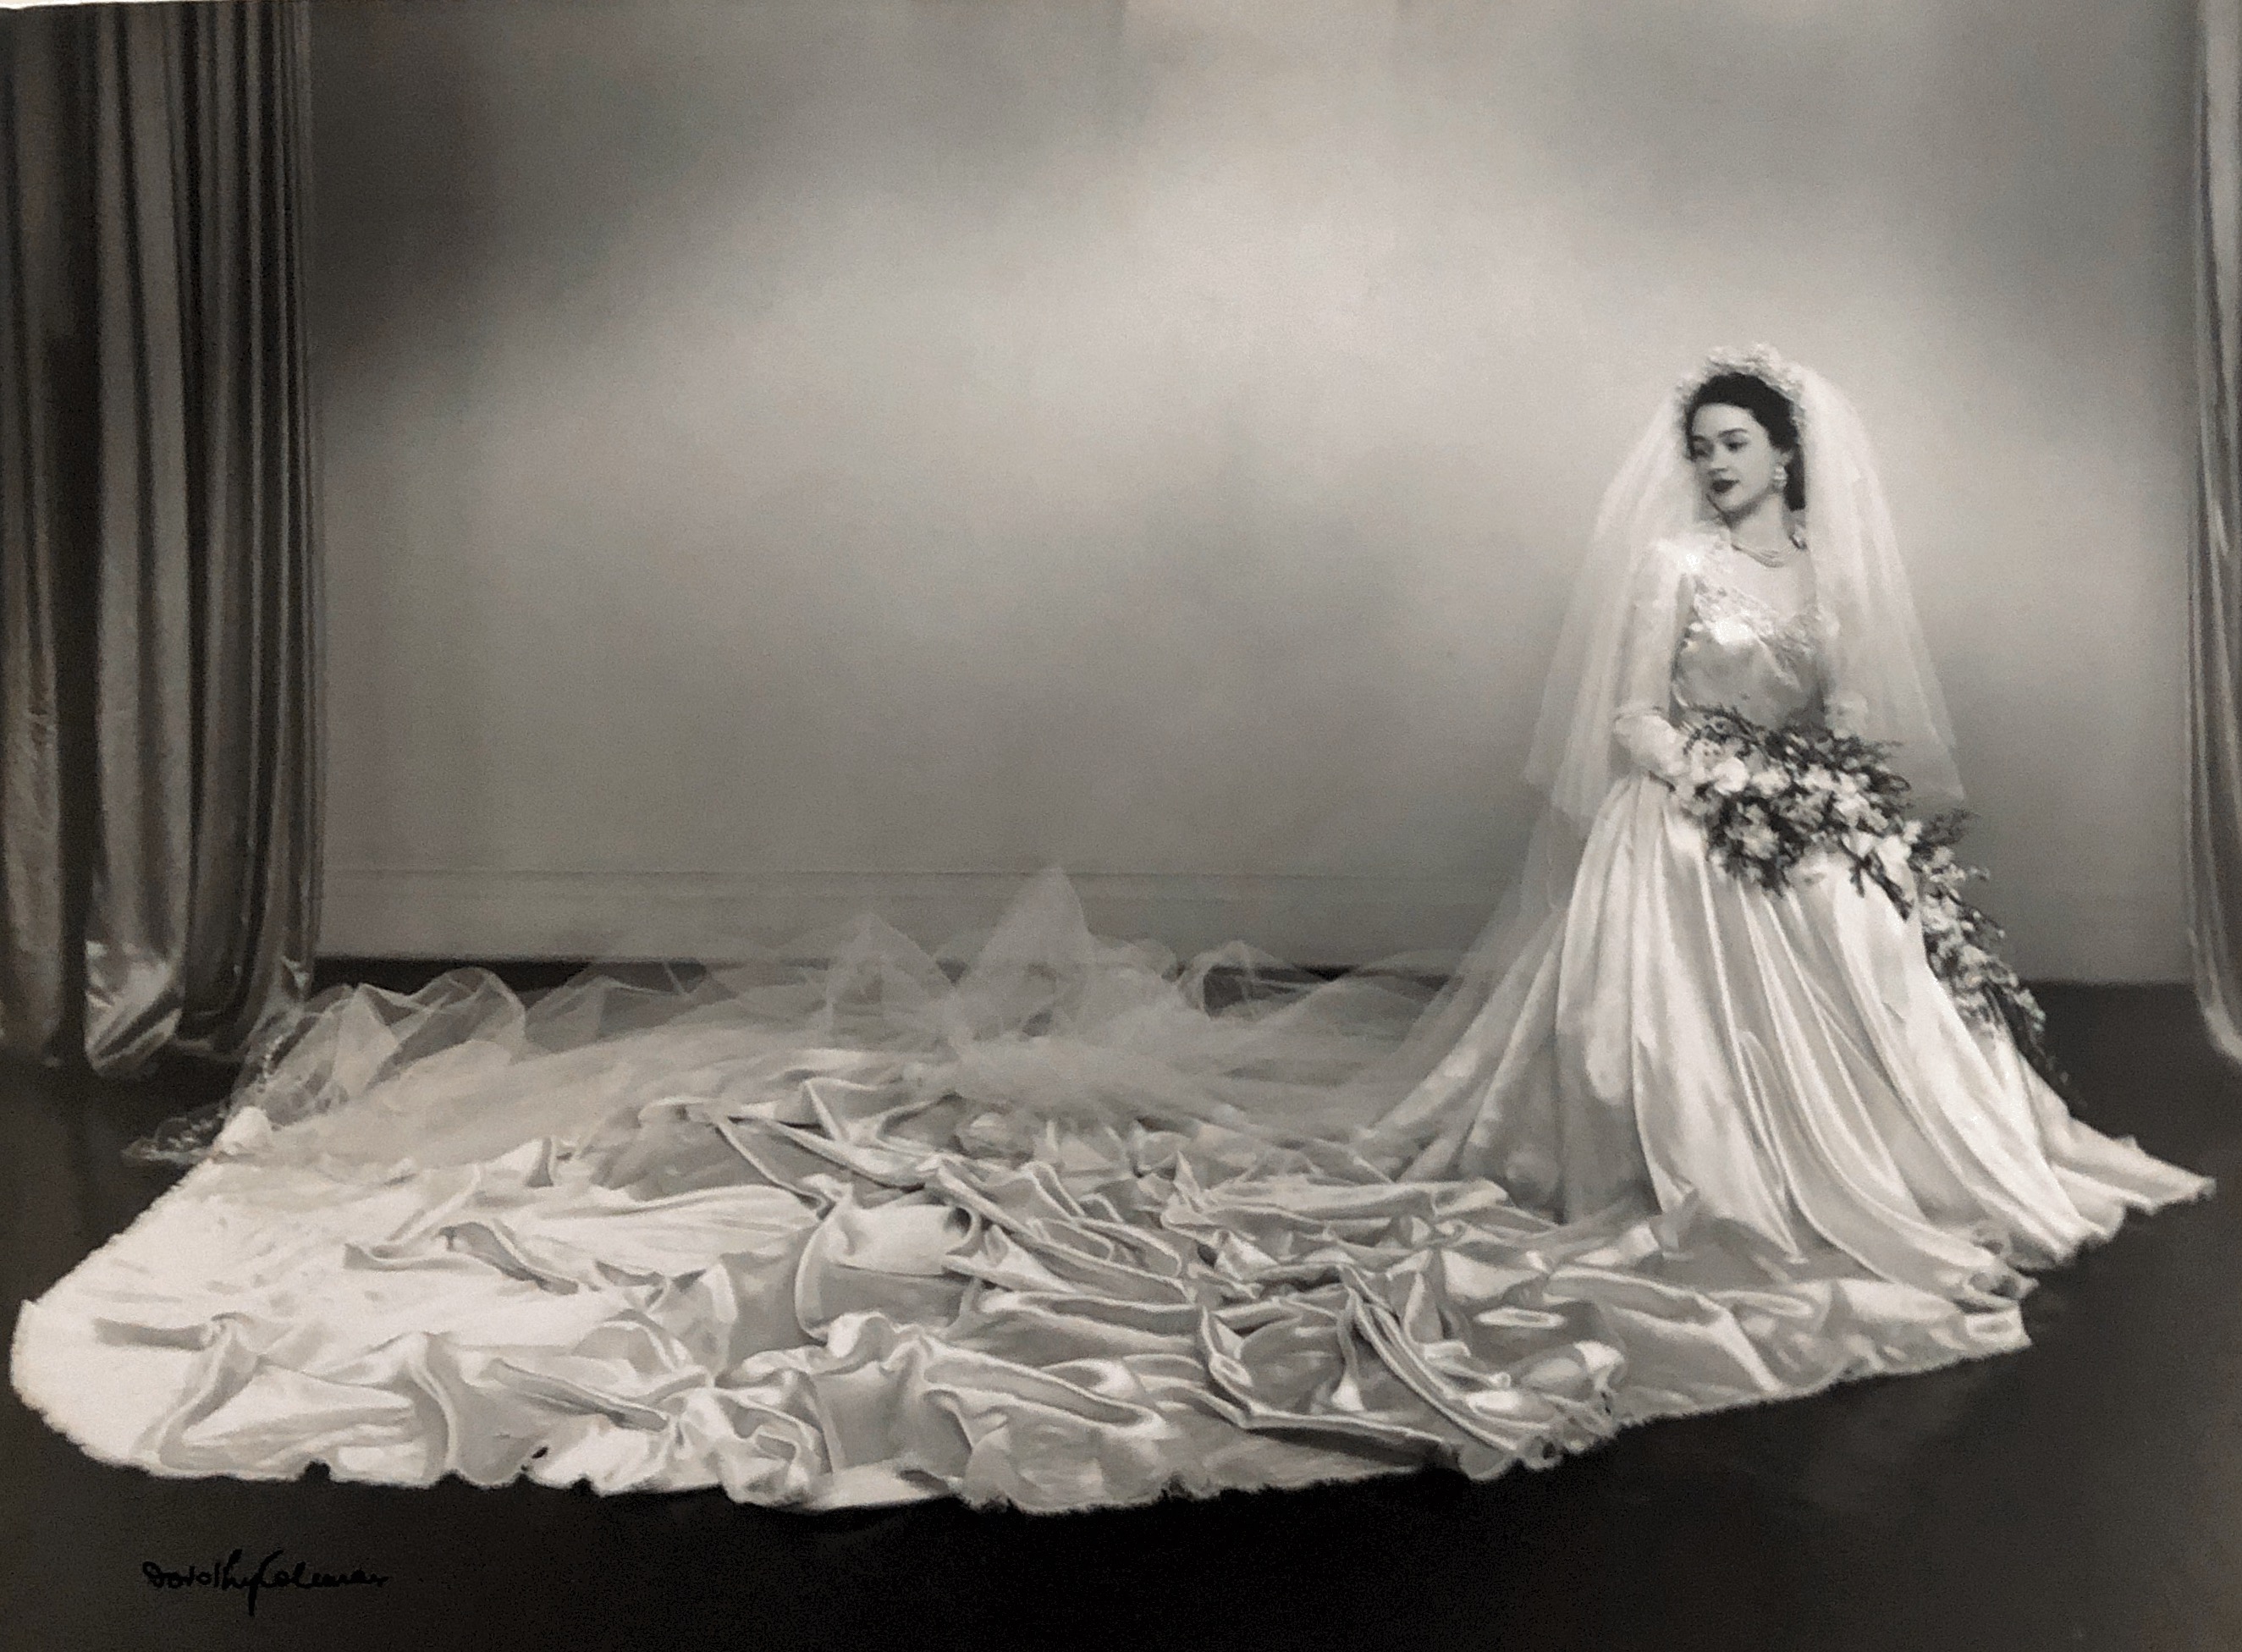 Mum as a bride - 1953